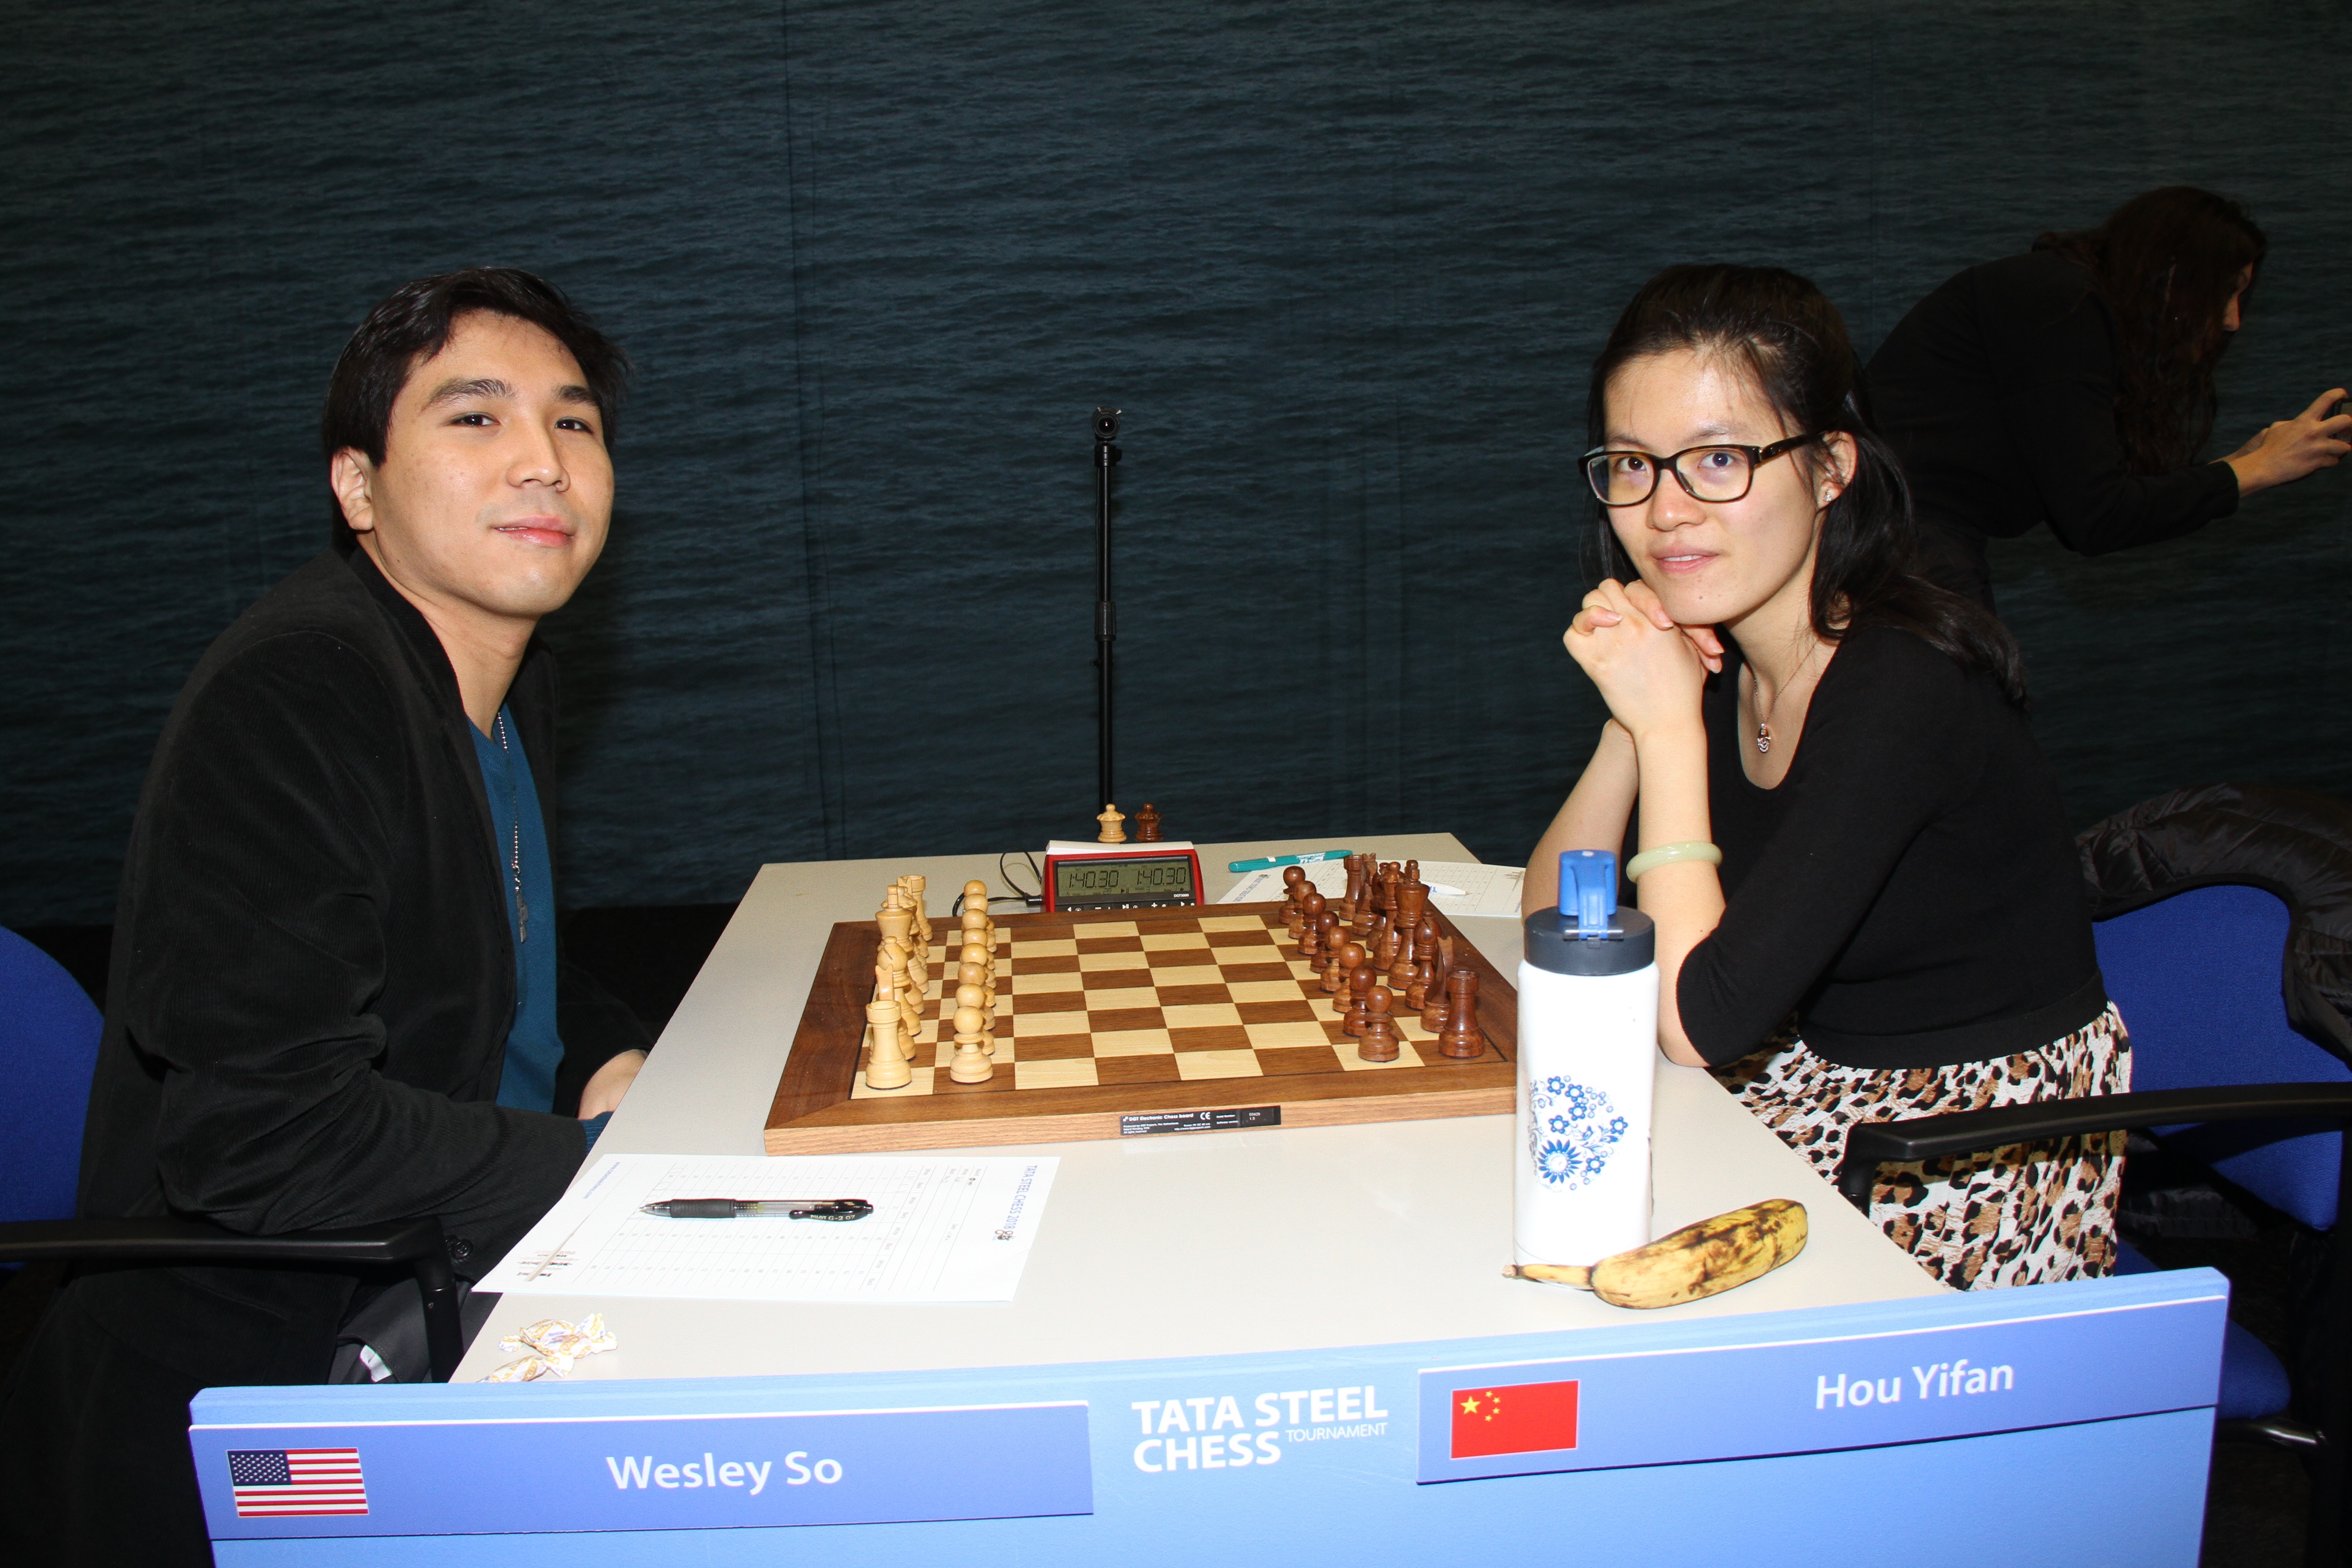 Wijk aan Zee Chess Tournament: Magnus Carlsen suffers back-to-back